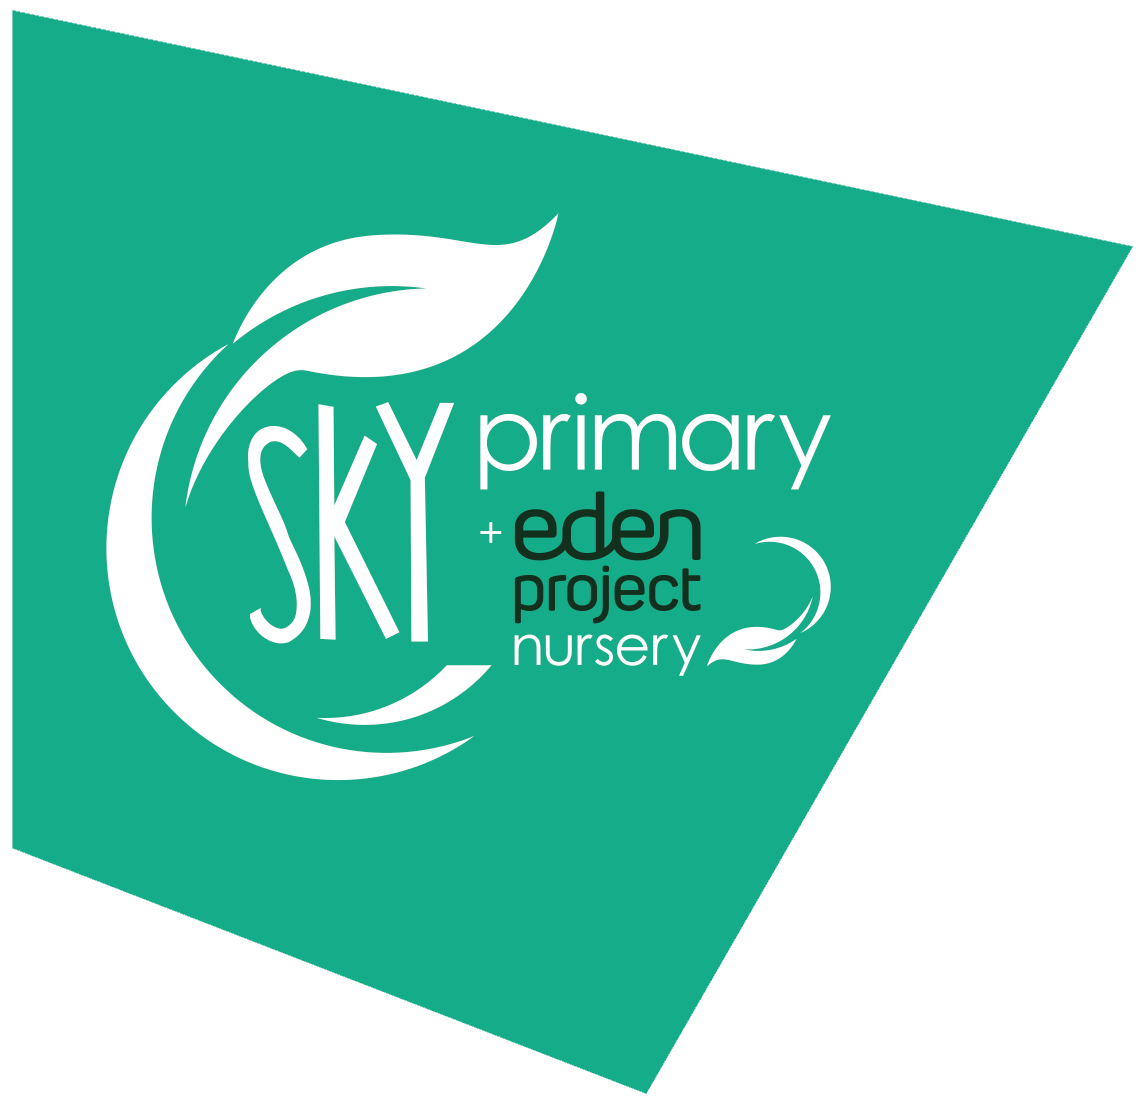 Sky Primary